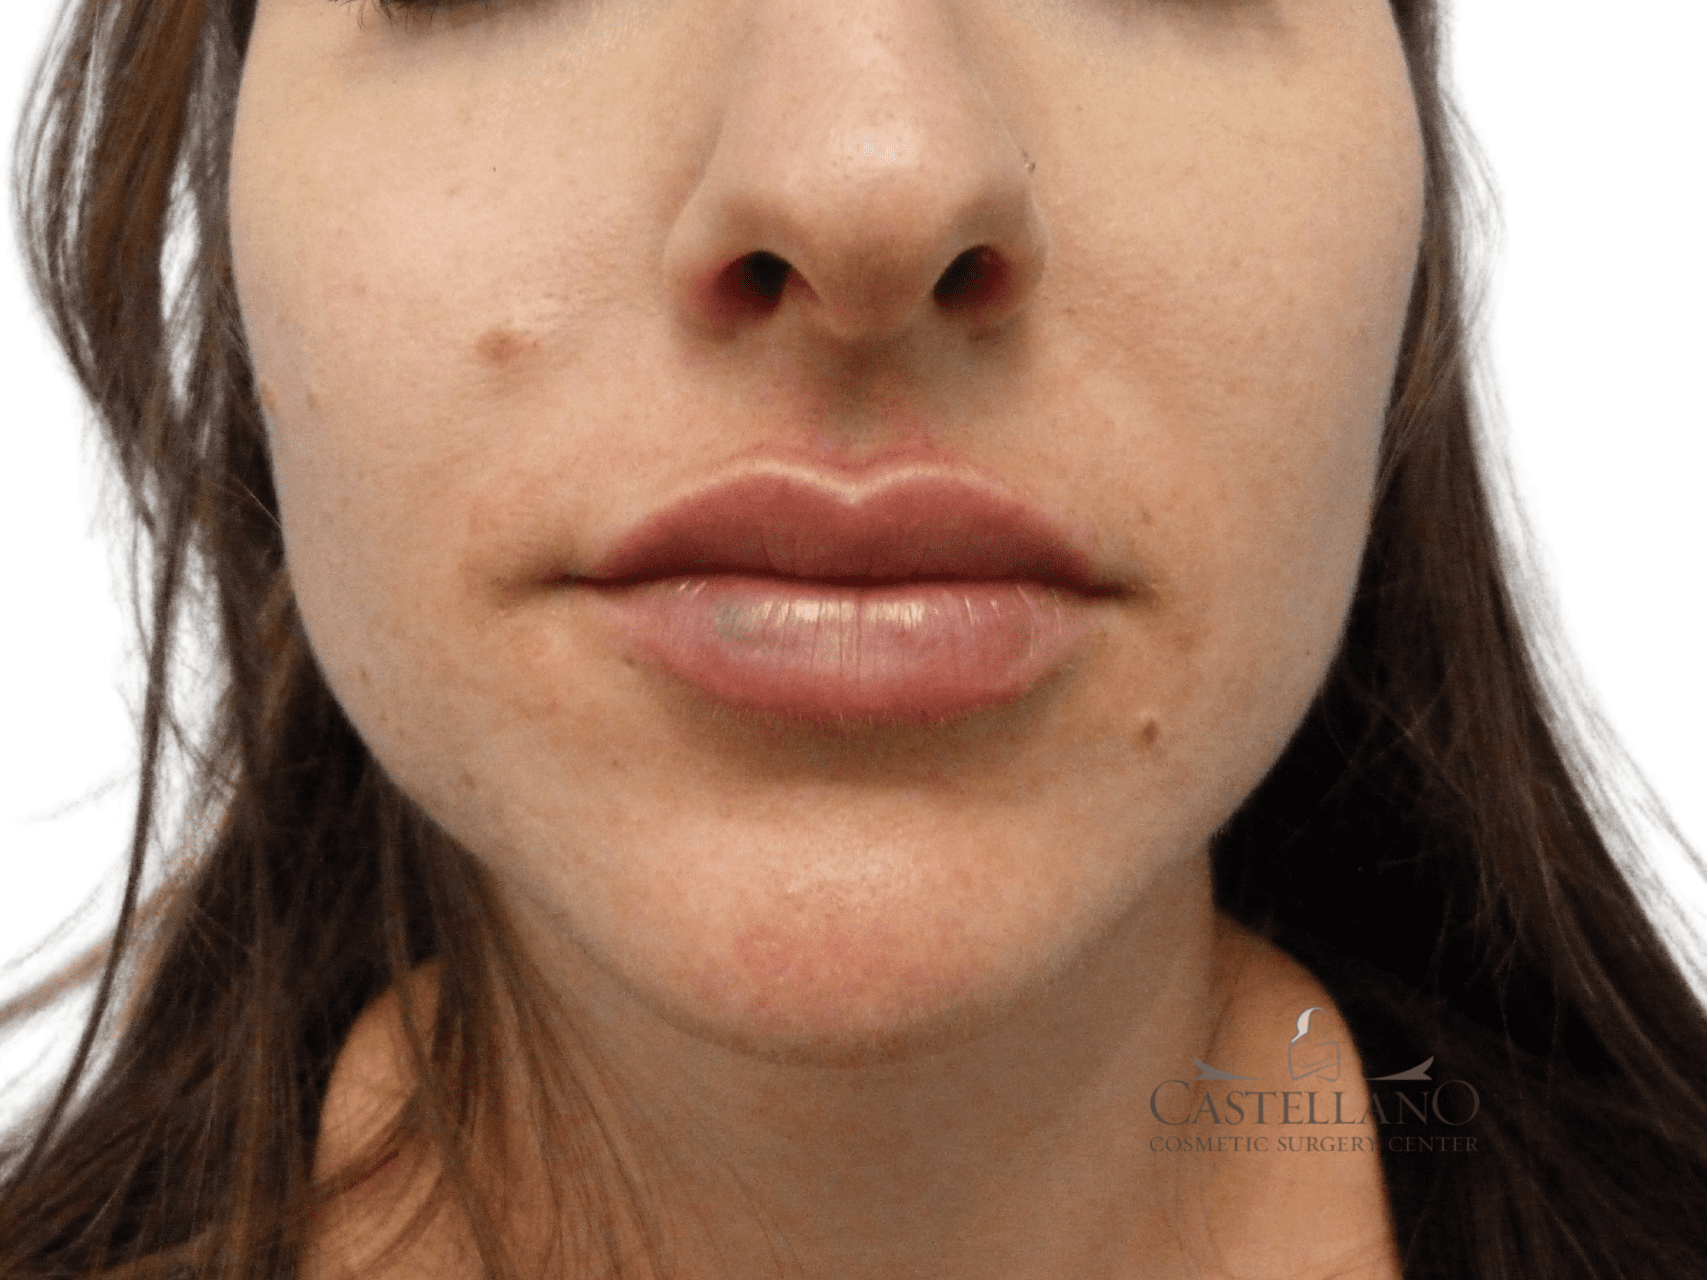 Lip Augmentation Patient Photo - Case 18928 - after view